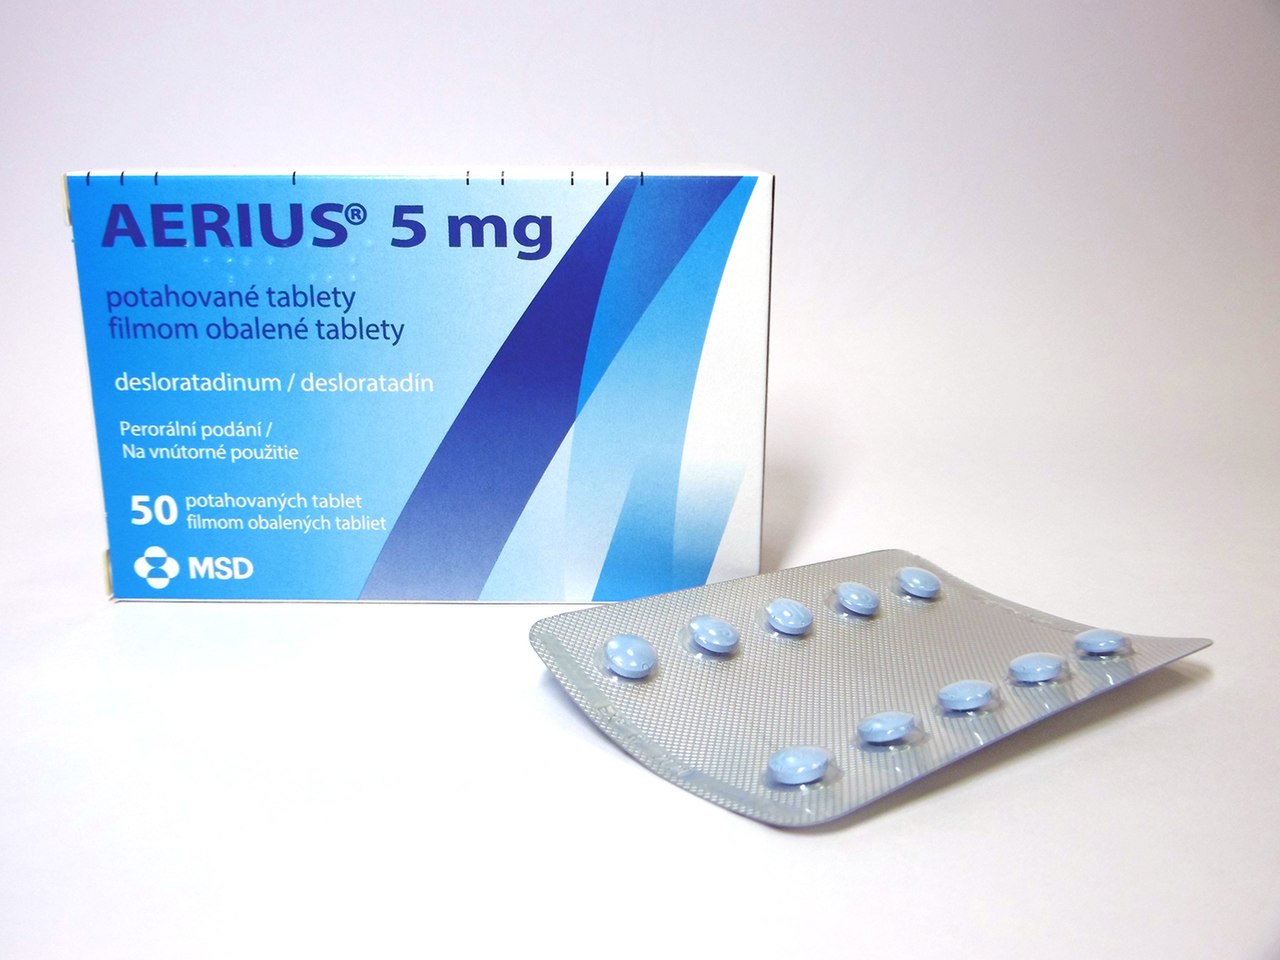 دواء ايريوس aerius هل يسبب النعاس ؟ و معلومات مهمة عن الدواء